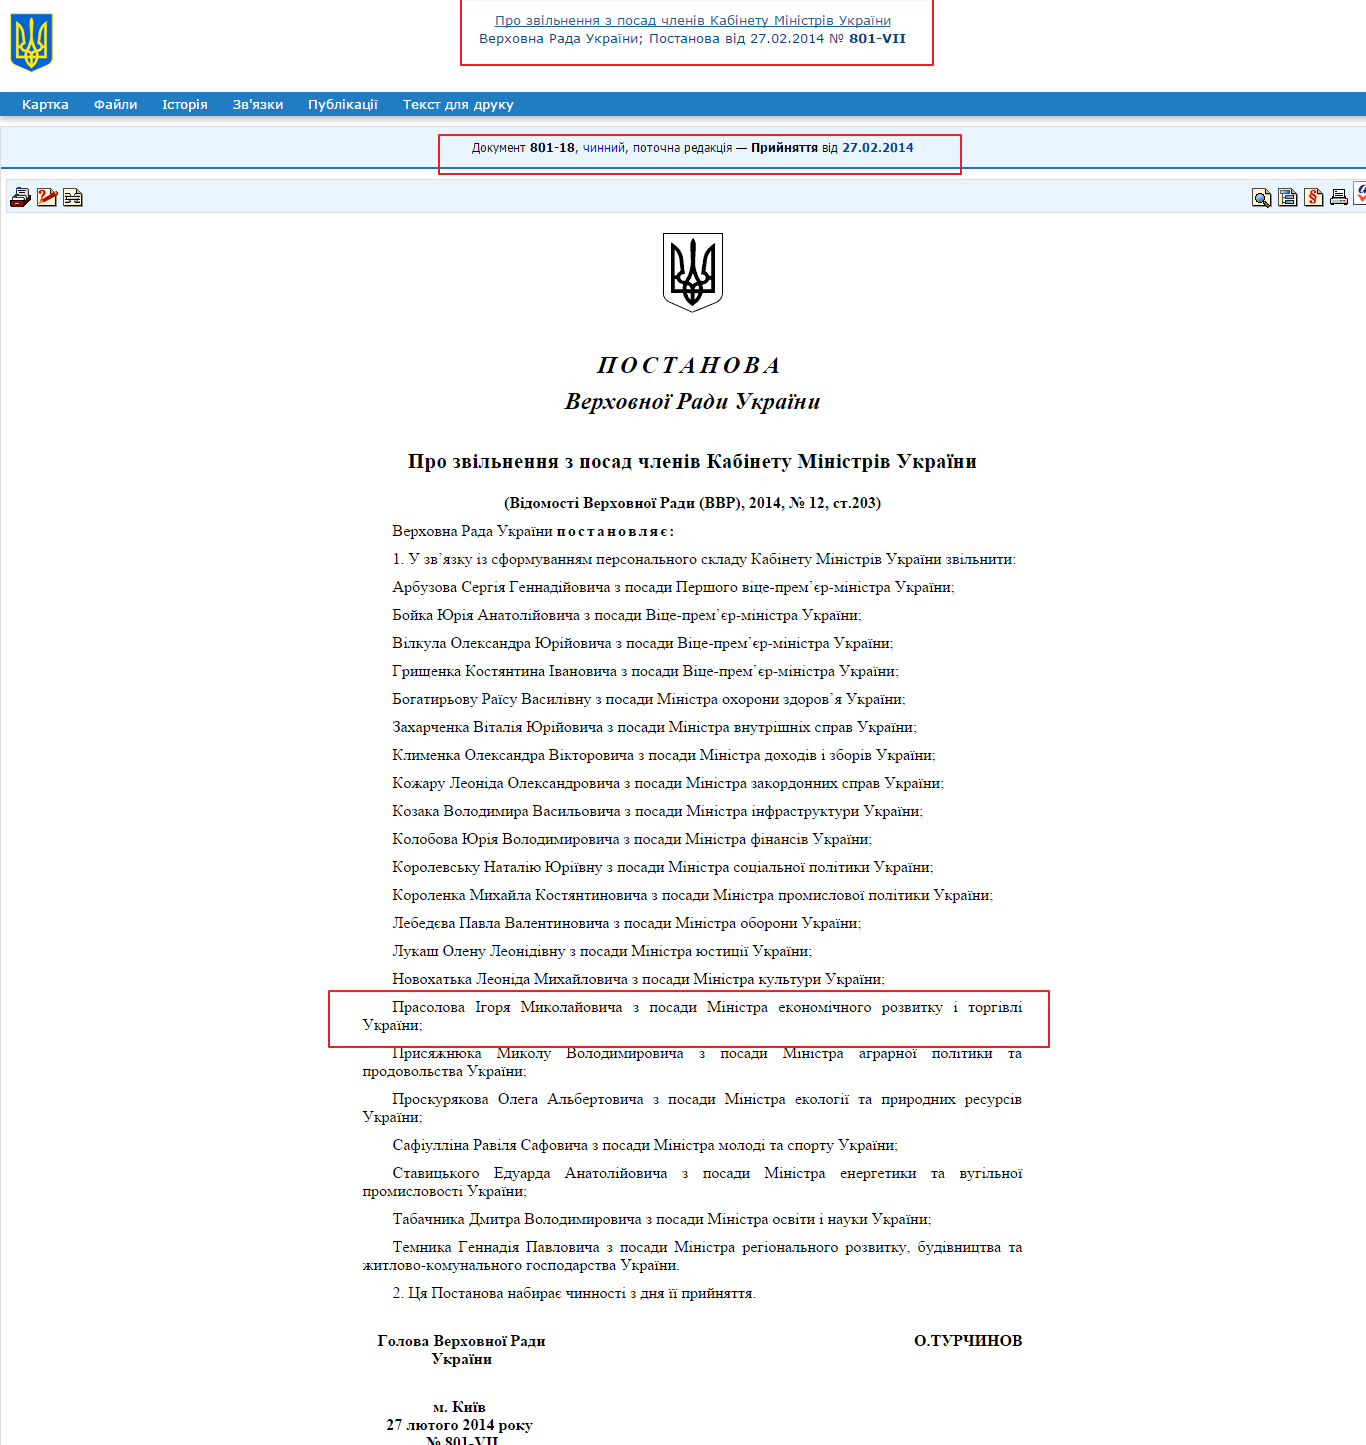 http://zakon1.rada.gov.ua/laws/show/801-vii